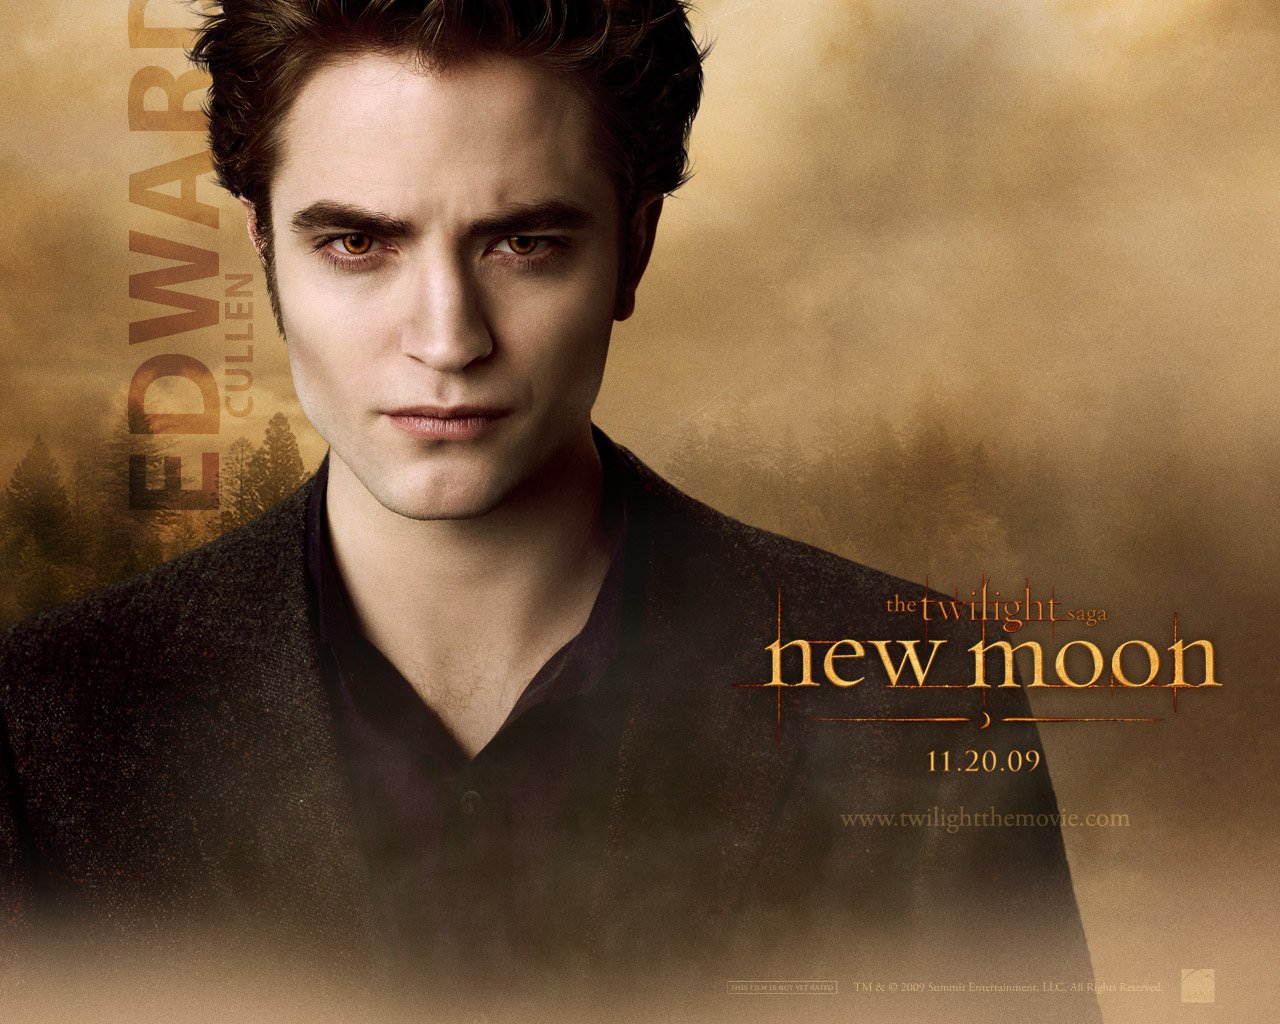 Desktop Wallpapers - Twilight 2: New Moon - Movie | Free Desktop ...